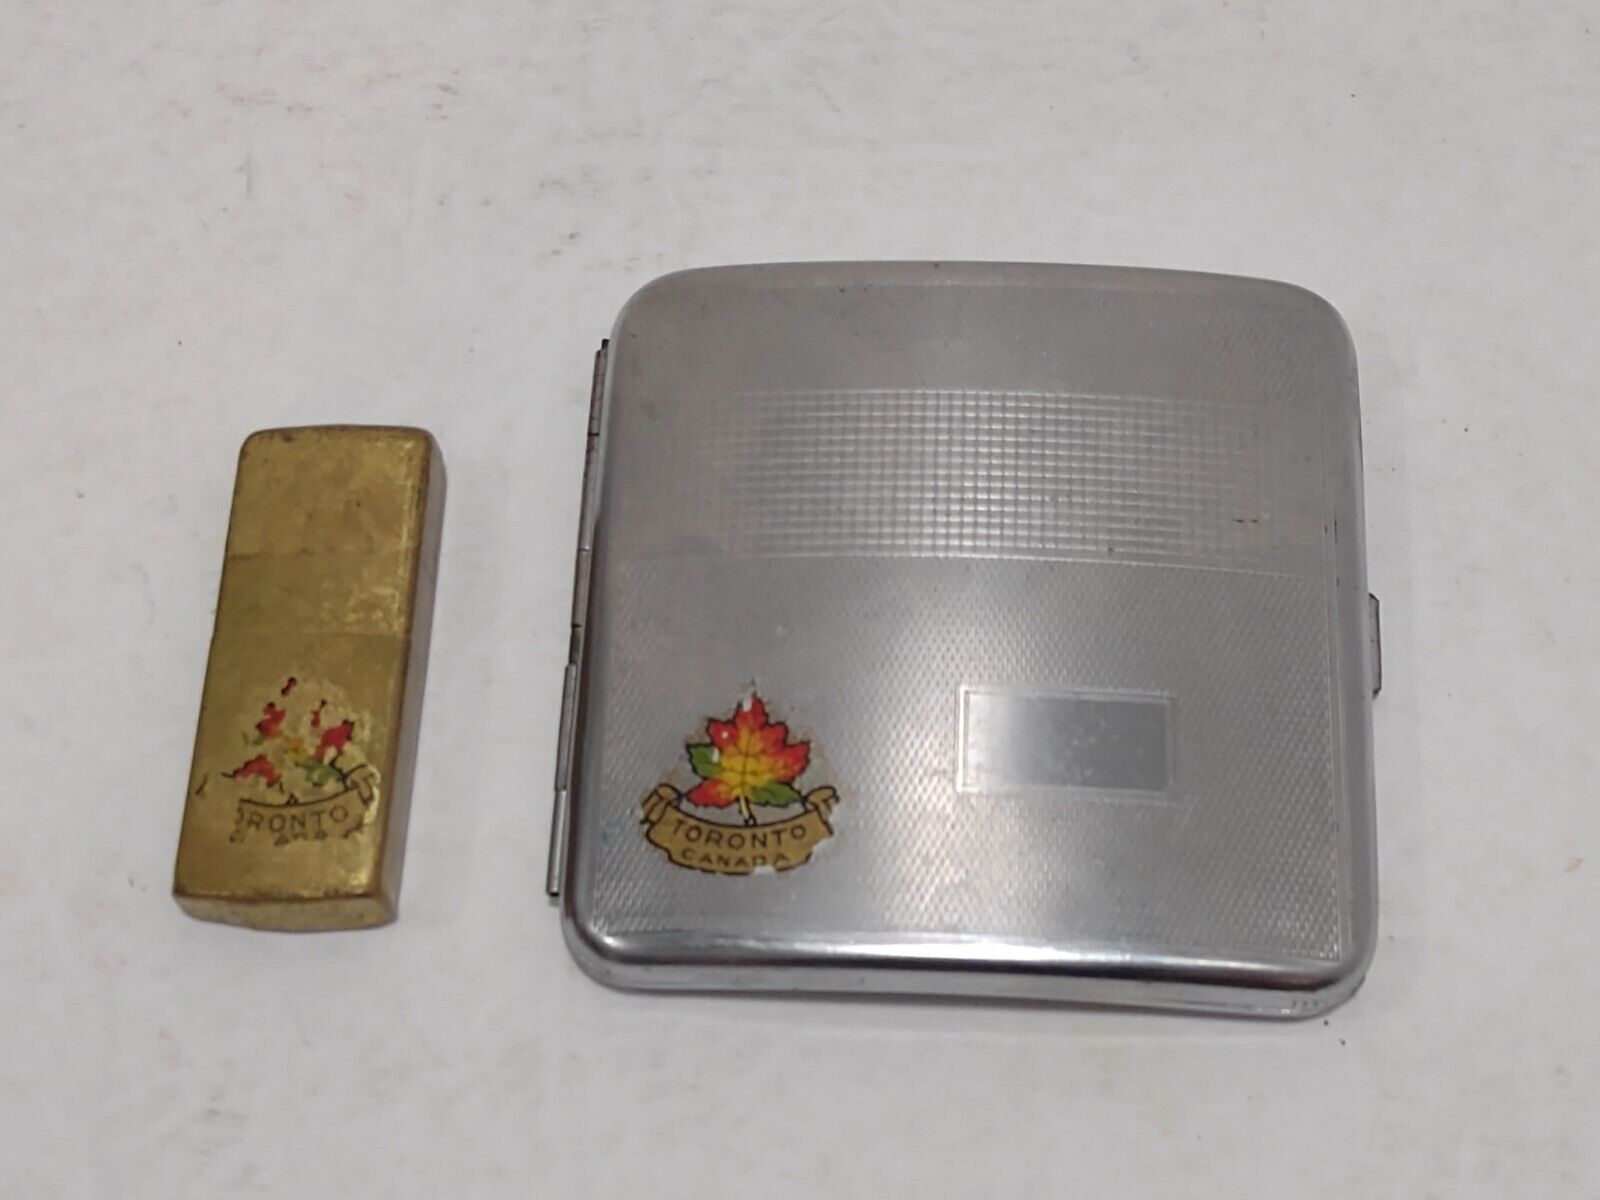 Vintage Brass Seigneur U.L. 839372 Cigarette Lighter & unbranded case Toronto 